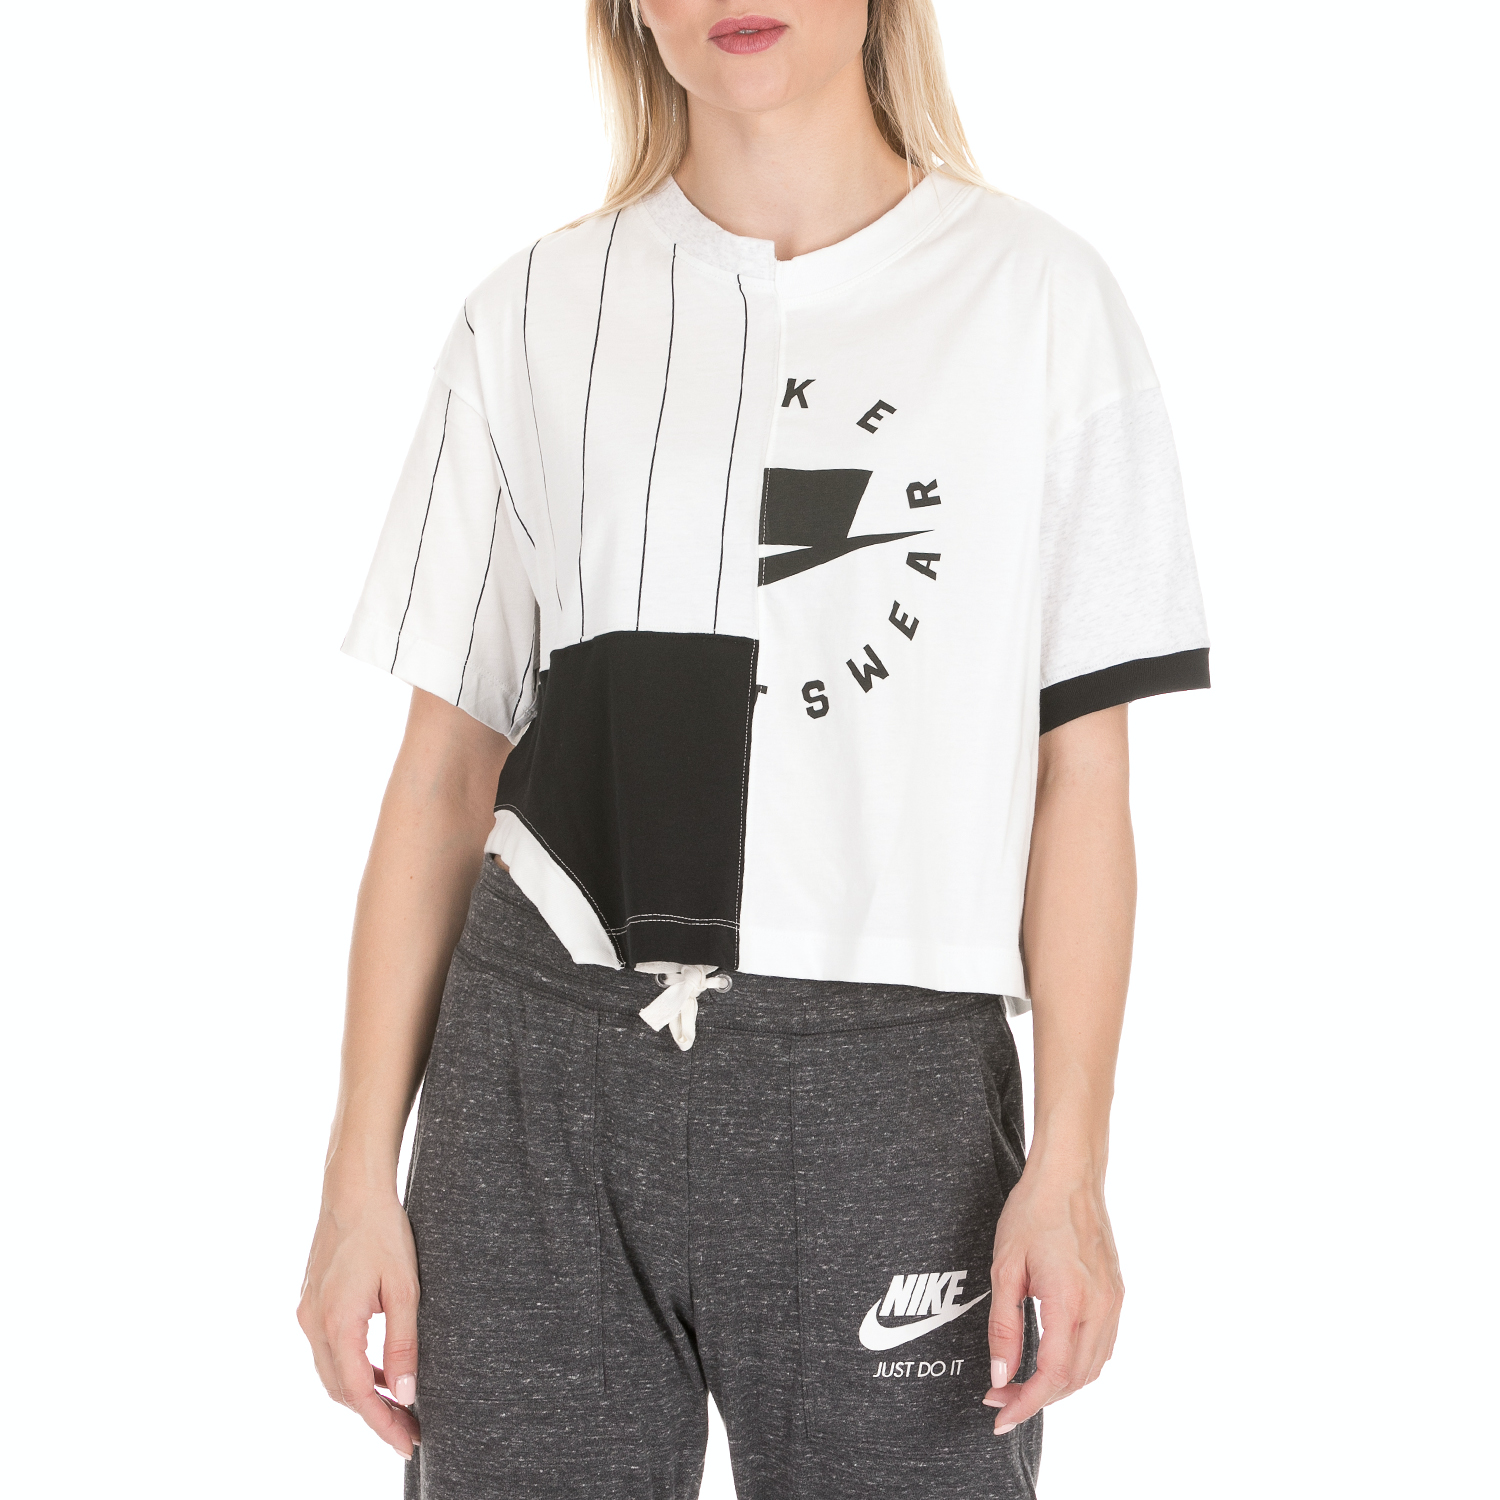 Γυναικεία/Ρούχα/Αθλητικά/T-shirt-Τοπ NIKE - Γυναικεία κοντομάνικη μπλούζα NIKE ασπρόμαυρη